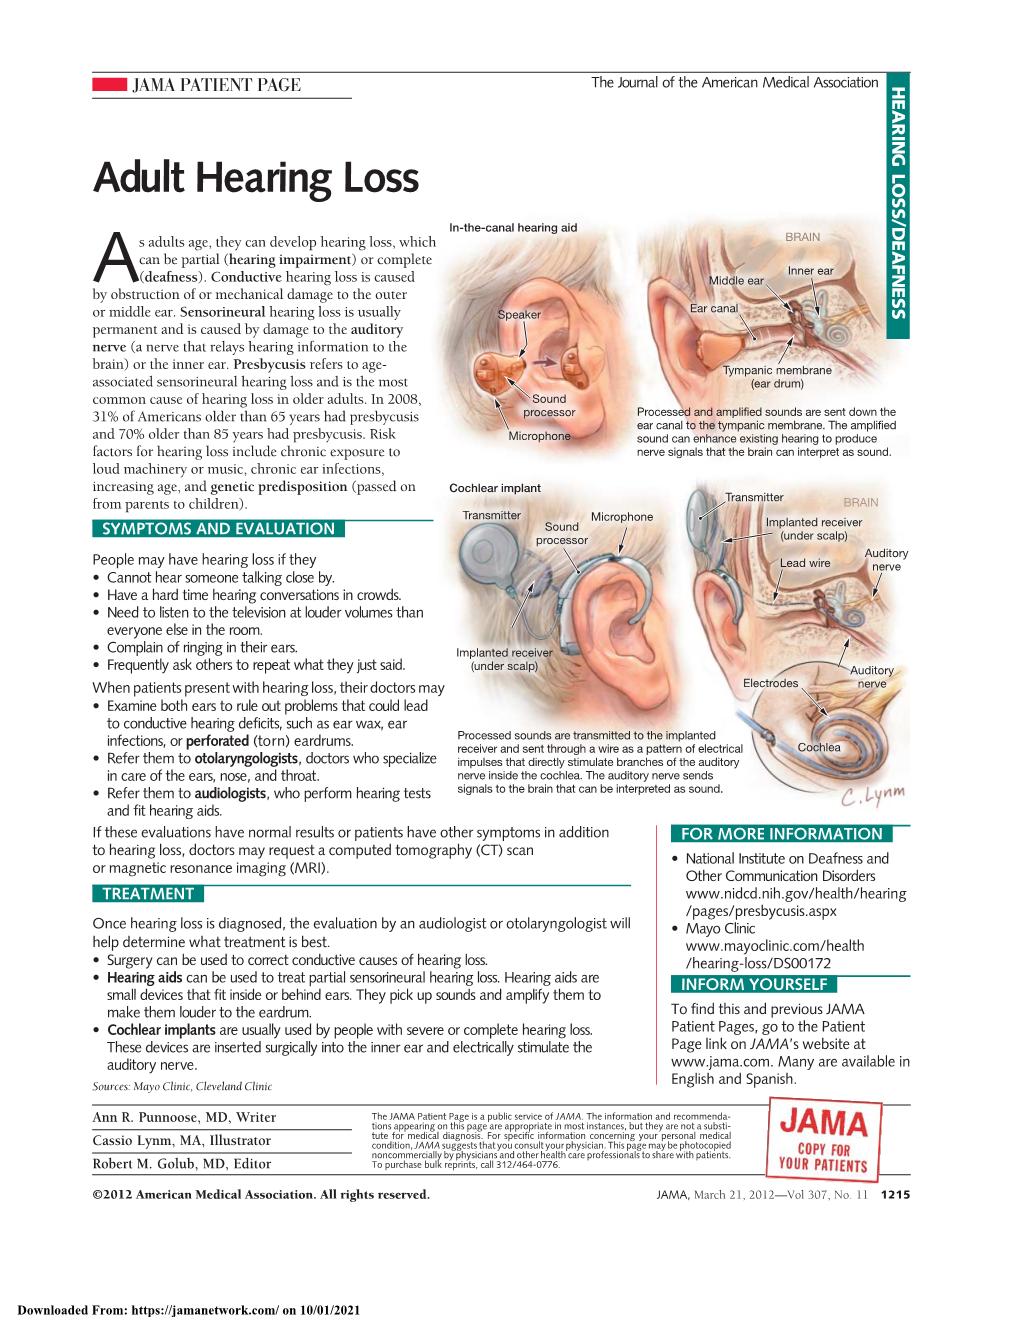 Adult Hearing Loss